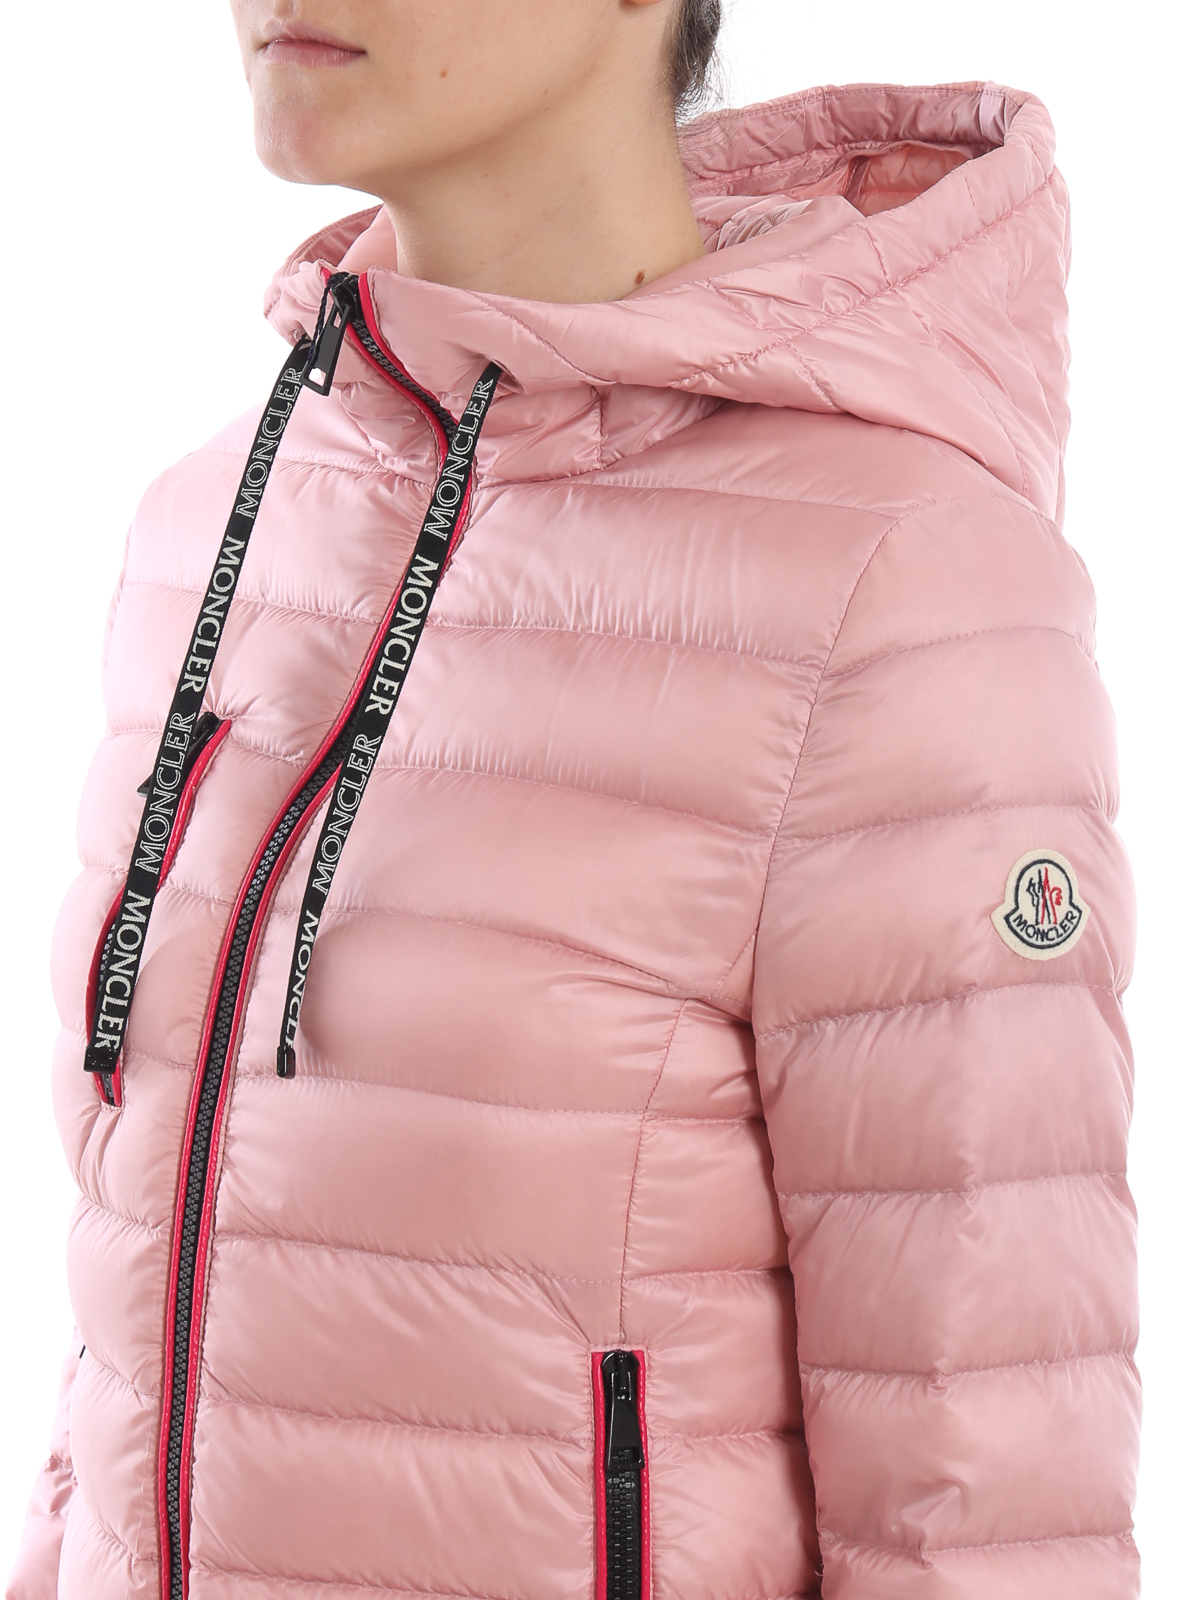 moncler pink puffer jacket